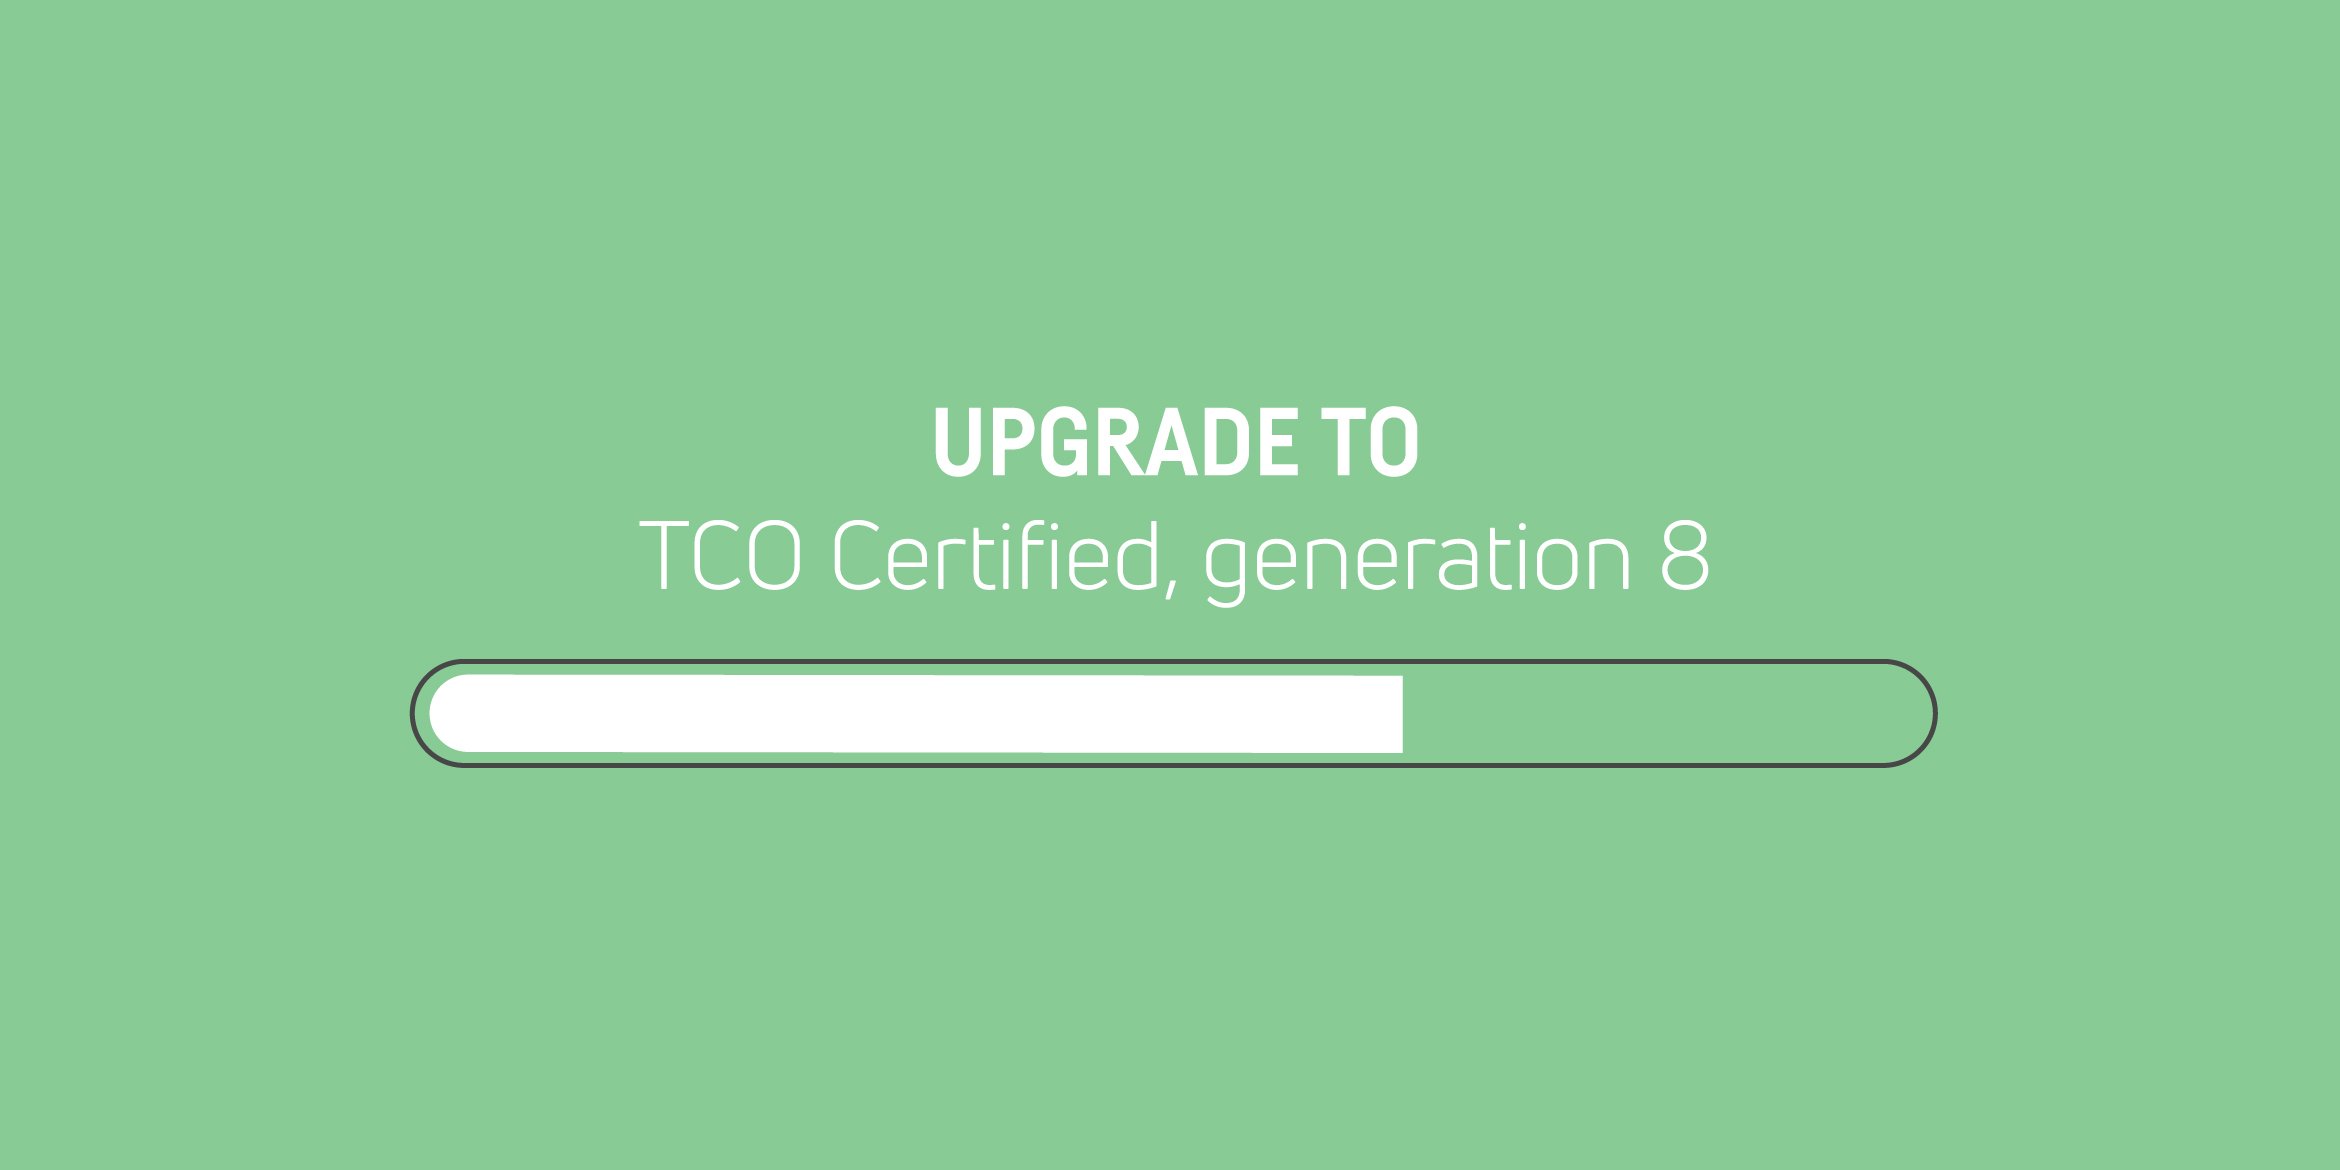 De vorige generatie TCO Certified wordt stopgezet - upgrade uw certificaten